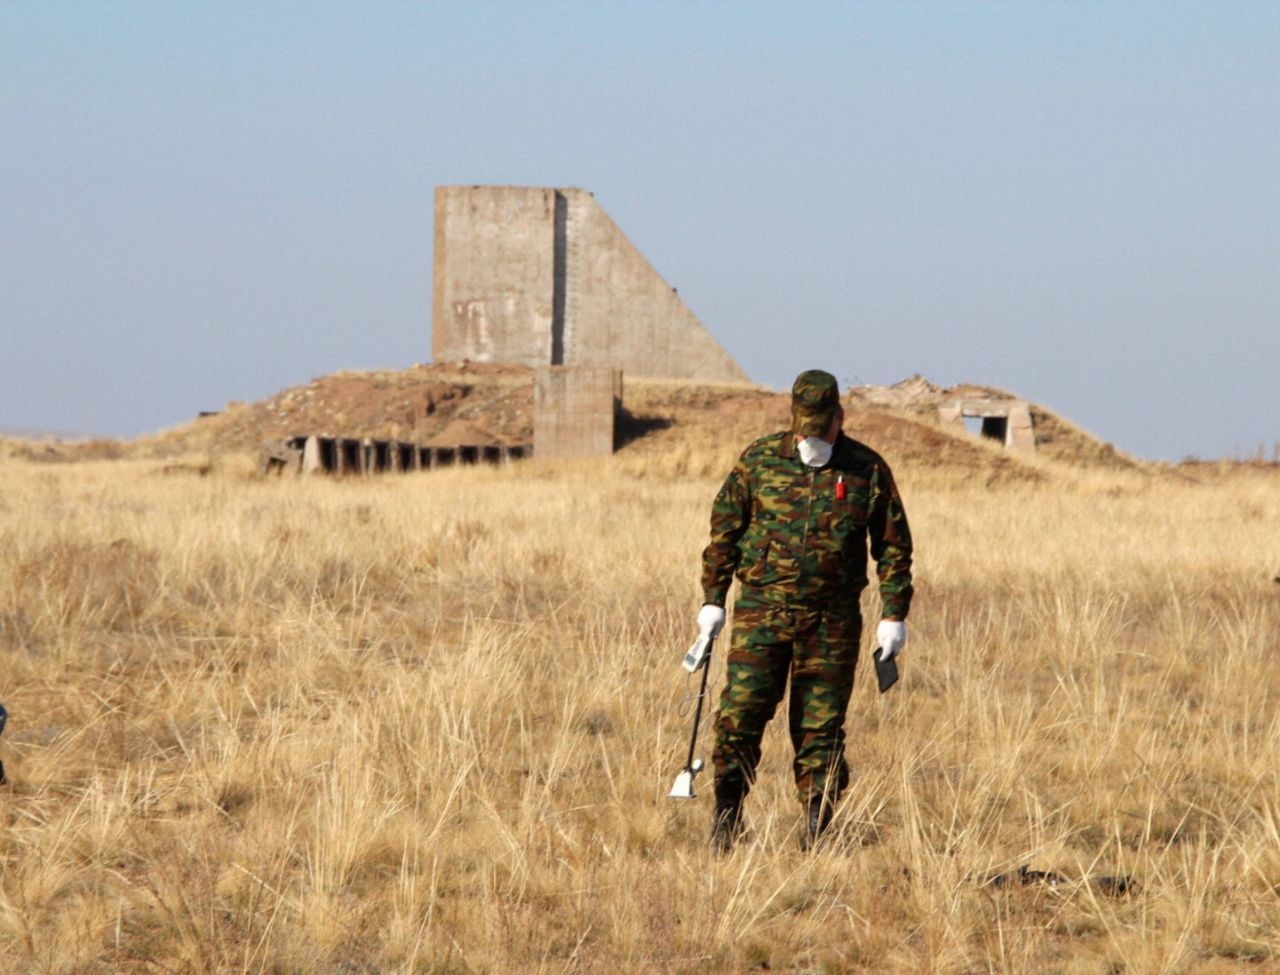 Das Atomwaffen-Testgelände Semipalatinsk in Kasachstan war der erste Ort in der Sowjetunion für Atombomben-Versuche. Von 1949 bis 1989 wurden dort Atomtests durchgeführt. Erst 2012 wurde das Gebiet offiziell geschlossen - trotzdem bleibt es praktisch für jeden zugänglich.